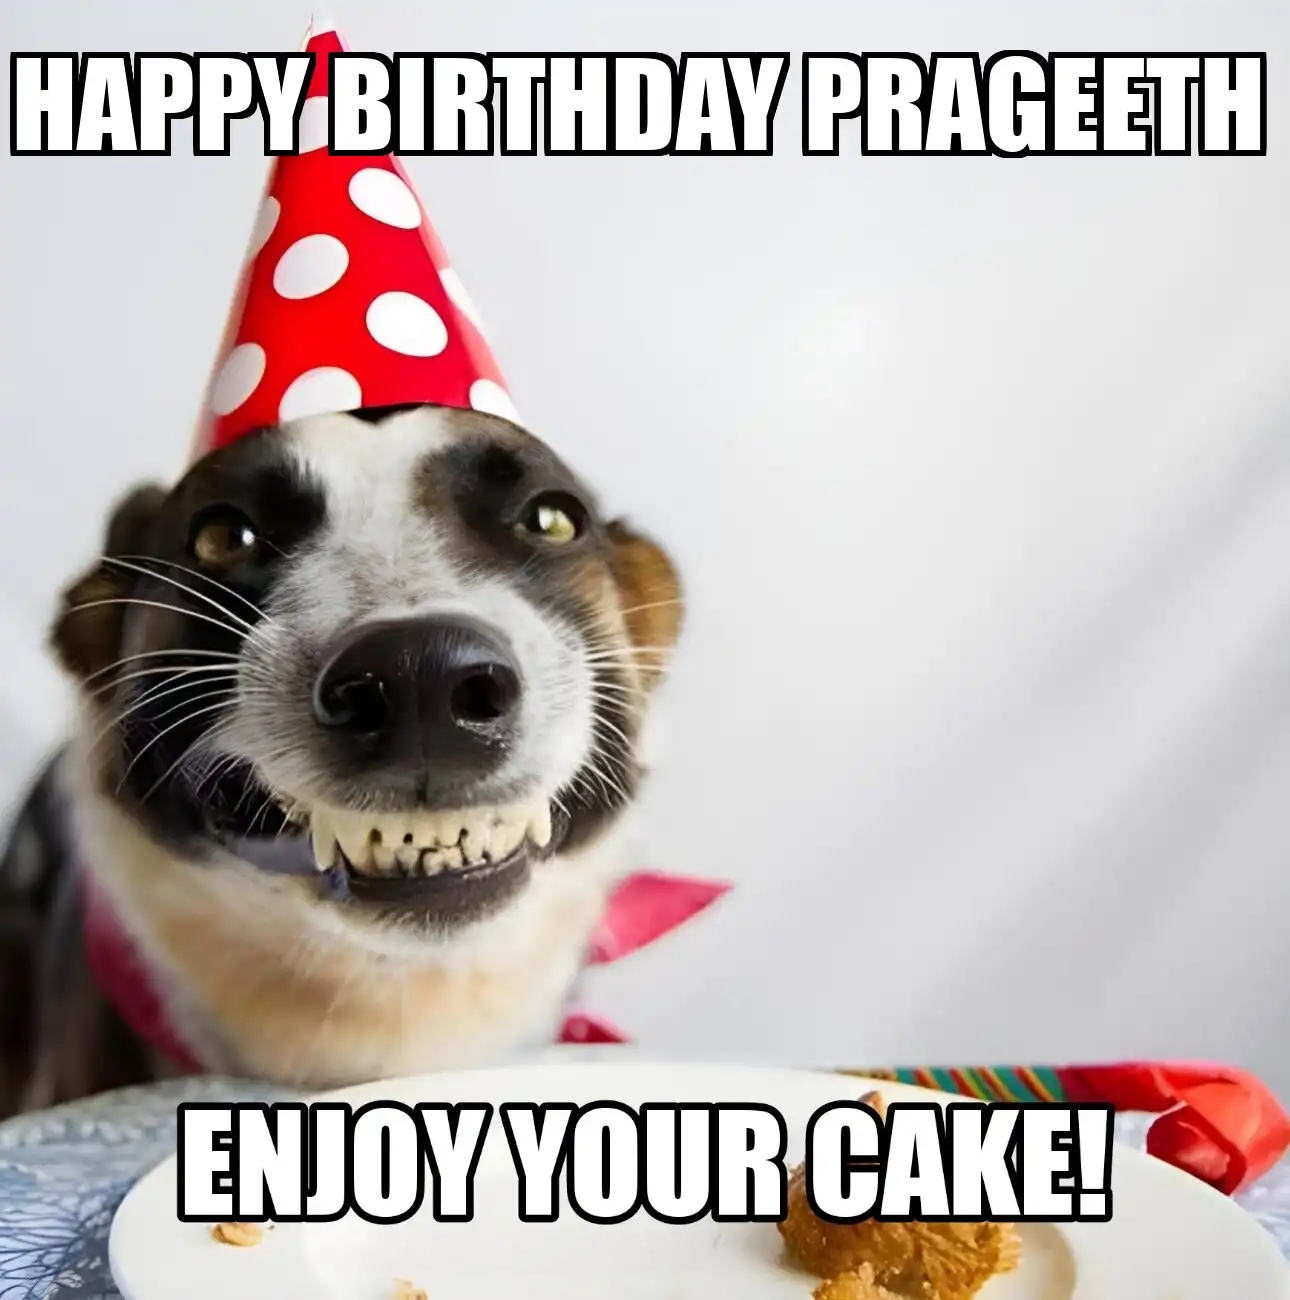 Happy Birthday Prageeth Enjoy Your Cake Dog Meme